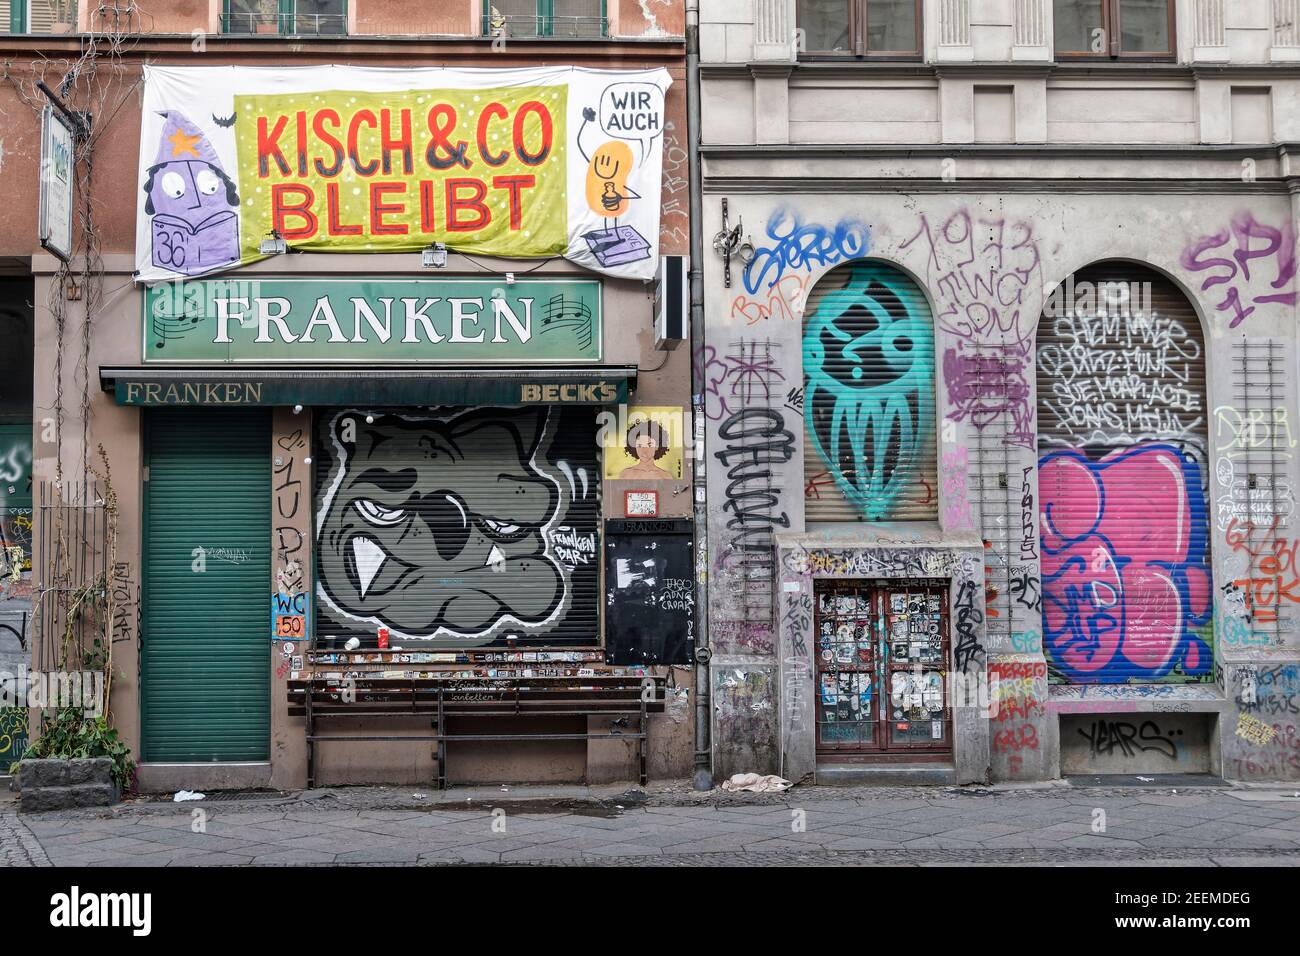 Oranienstrasse, Kreuzberg, Lockdown, Januar 2021, geschlossene Bar Franken, Protestplakat gegen Räumung vom Buchhandlung Kisch& Co Foto Stock